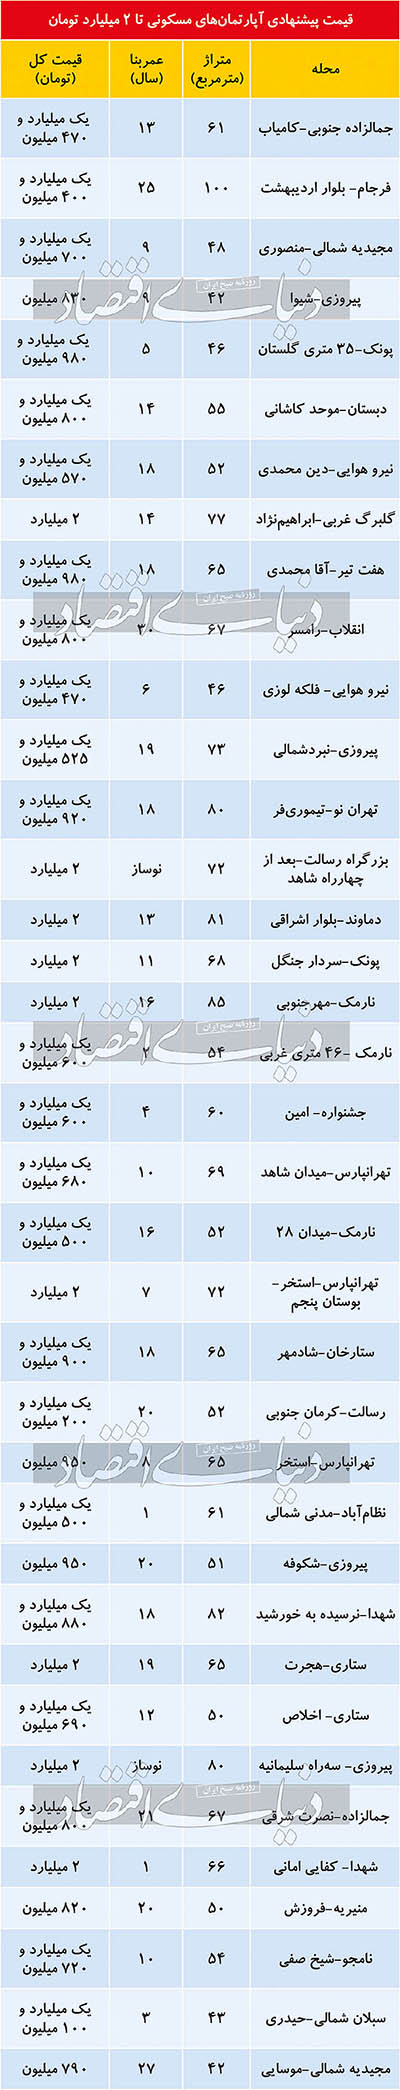 فهرست املاک تا ۲میلیارد تومان در تهران